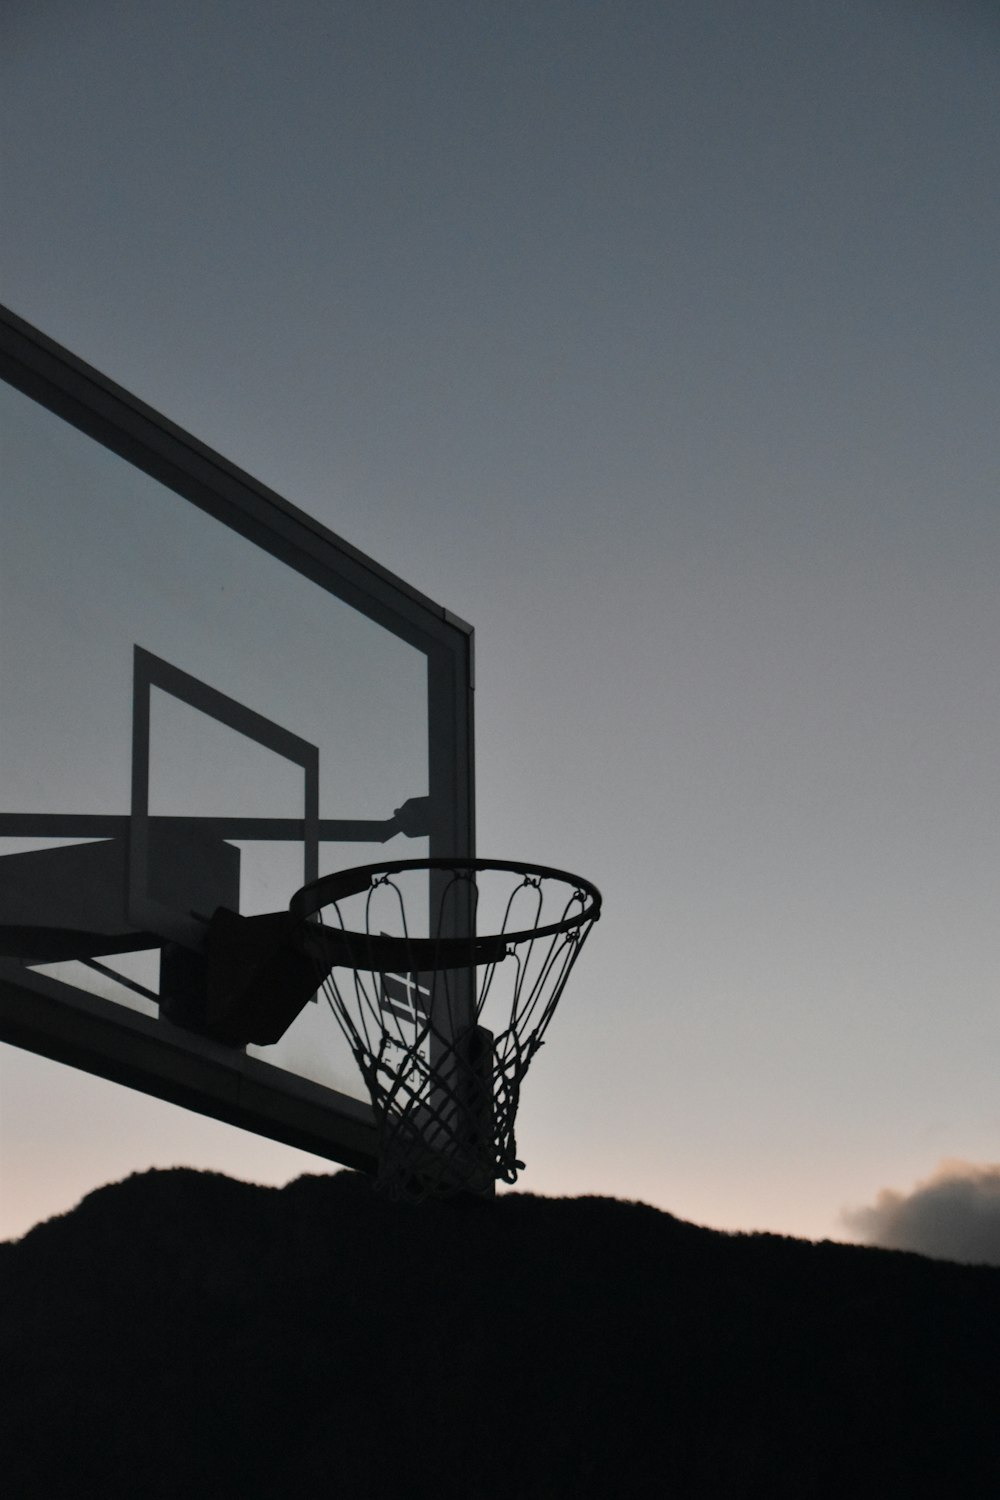 une silhouette d’un panier de basket-ball avec une montagne en arrière-plan